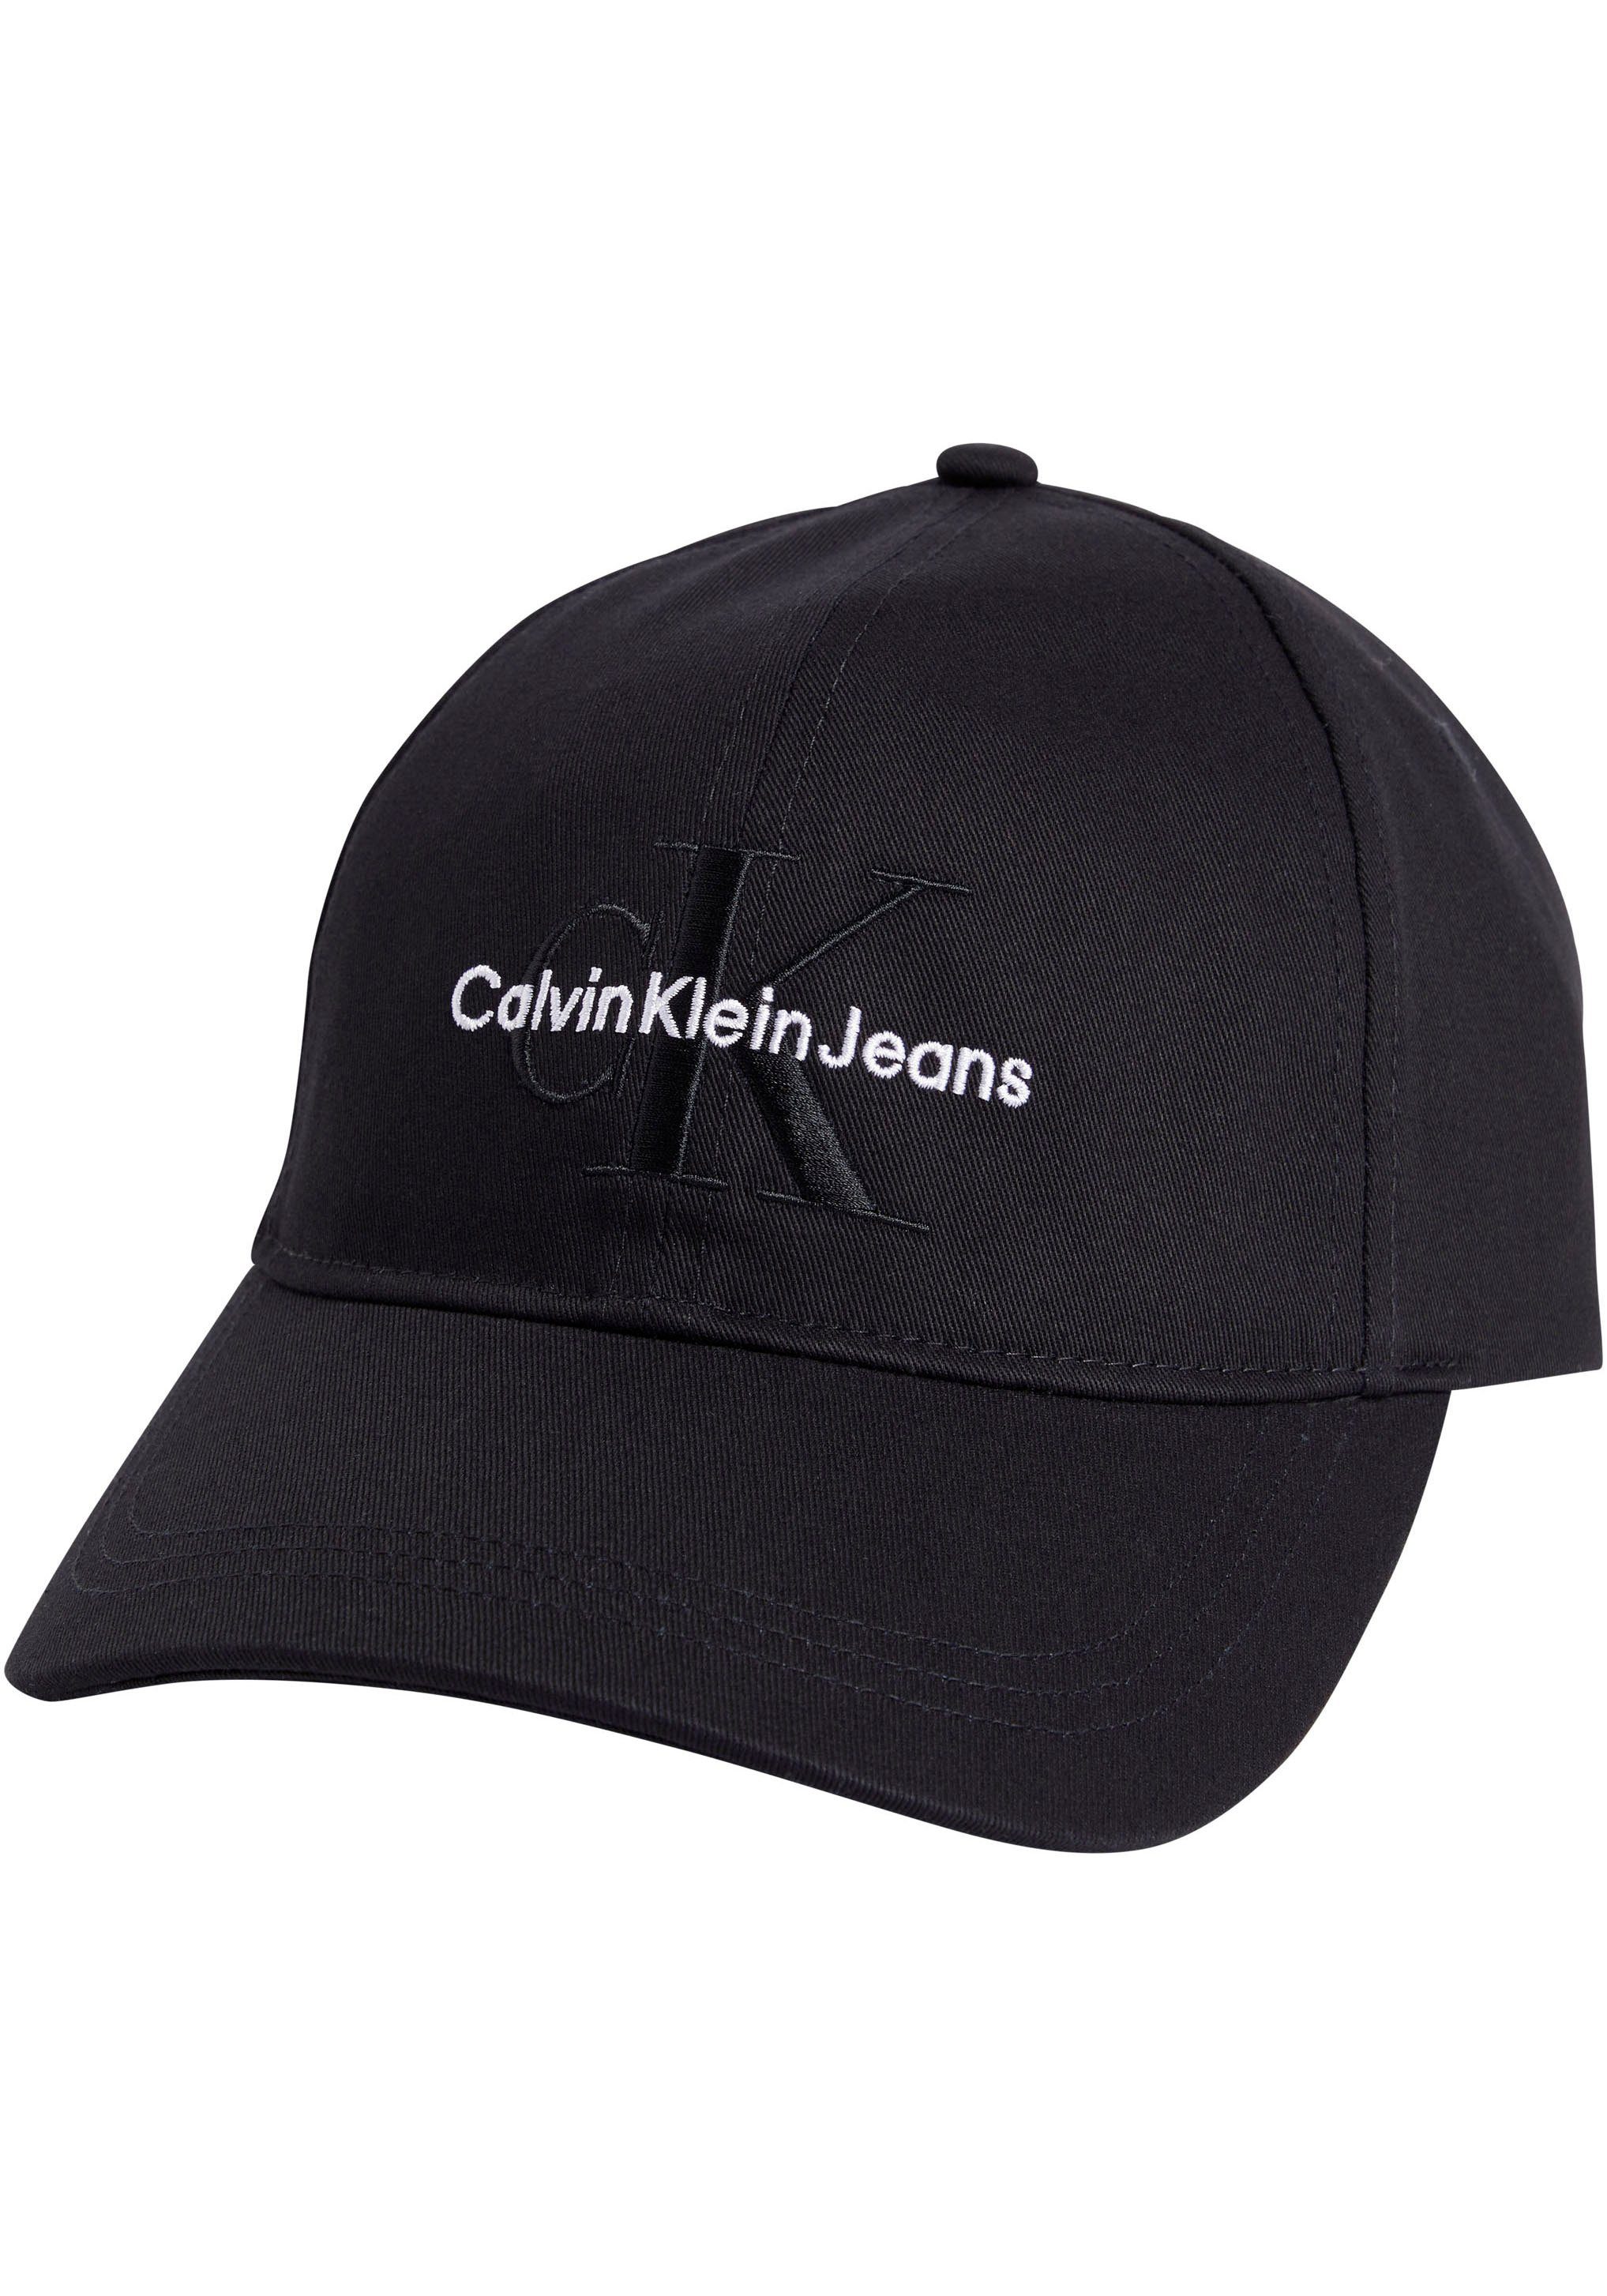 Calvin Klein Jeans Flex Cap mit Logostickereien schwarz